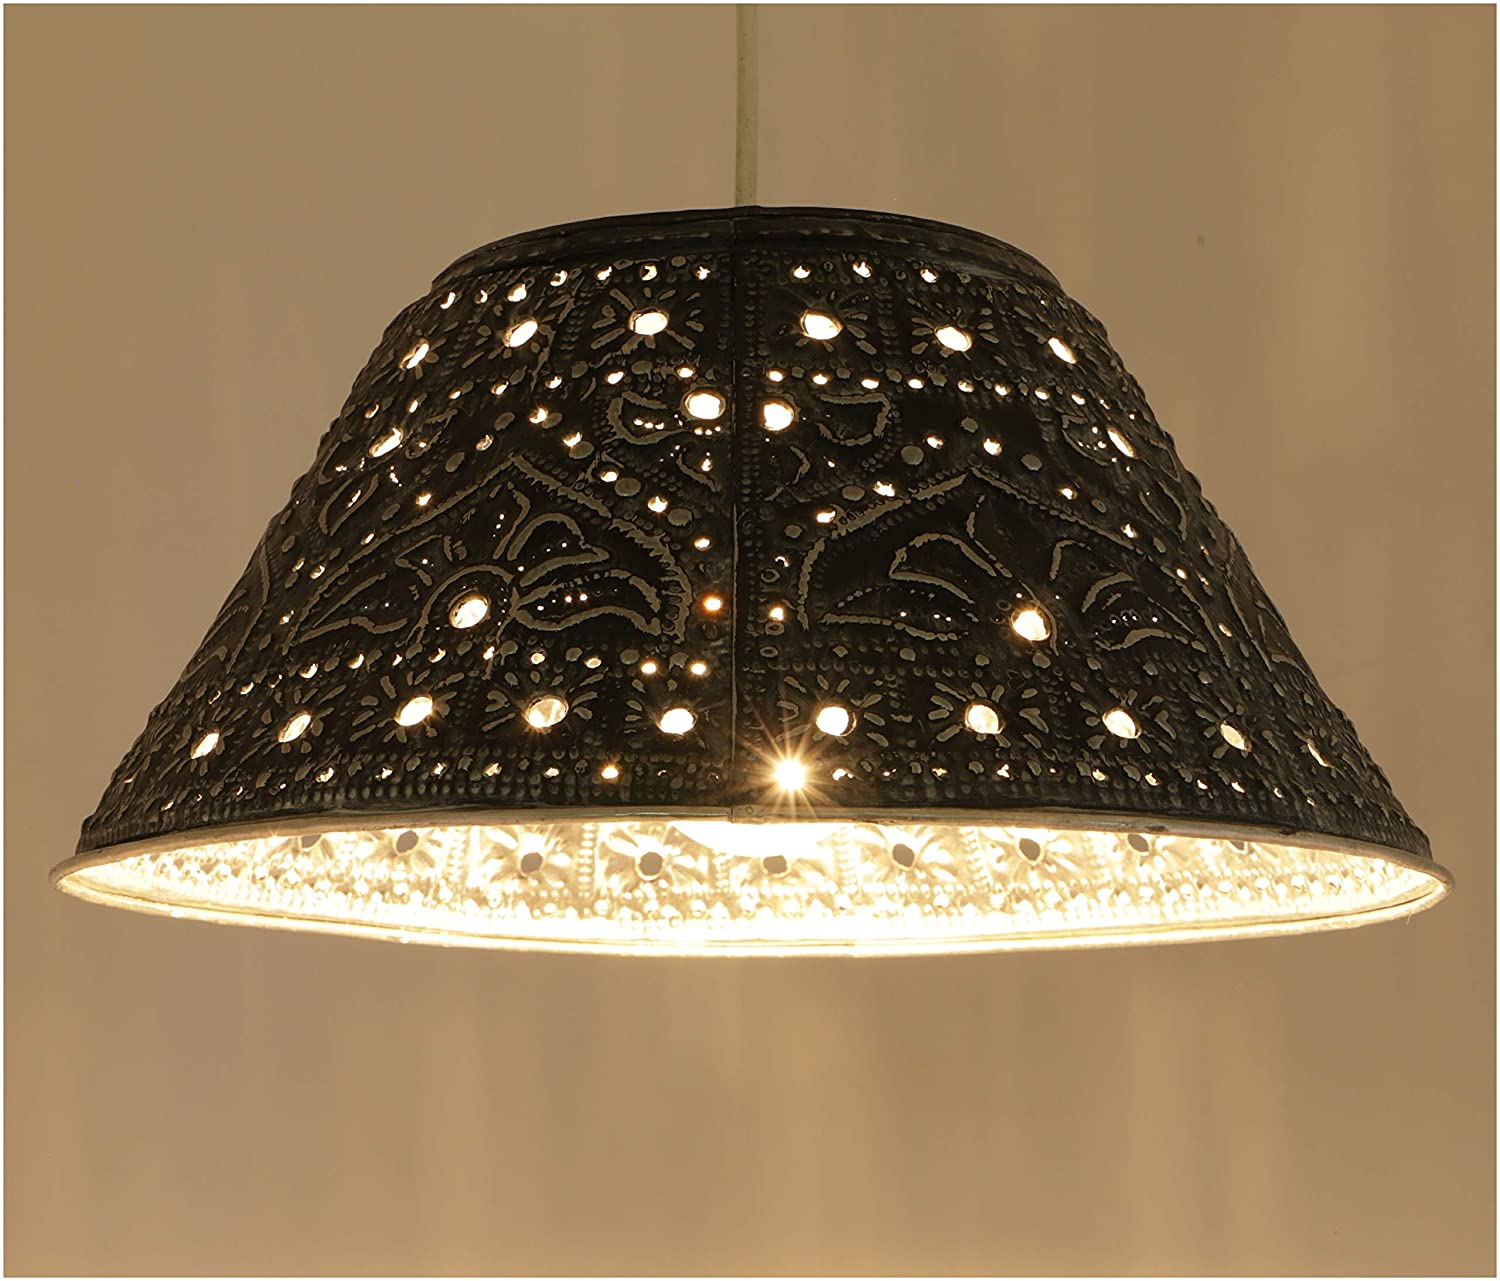 Guru-Shop Ceiling Lamp/Ceiling Lamp, Hand-Made Of Embossed Aluminum Model, 